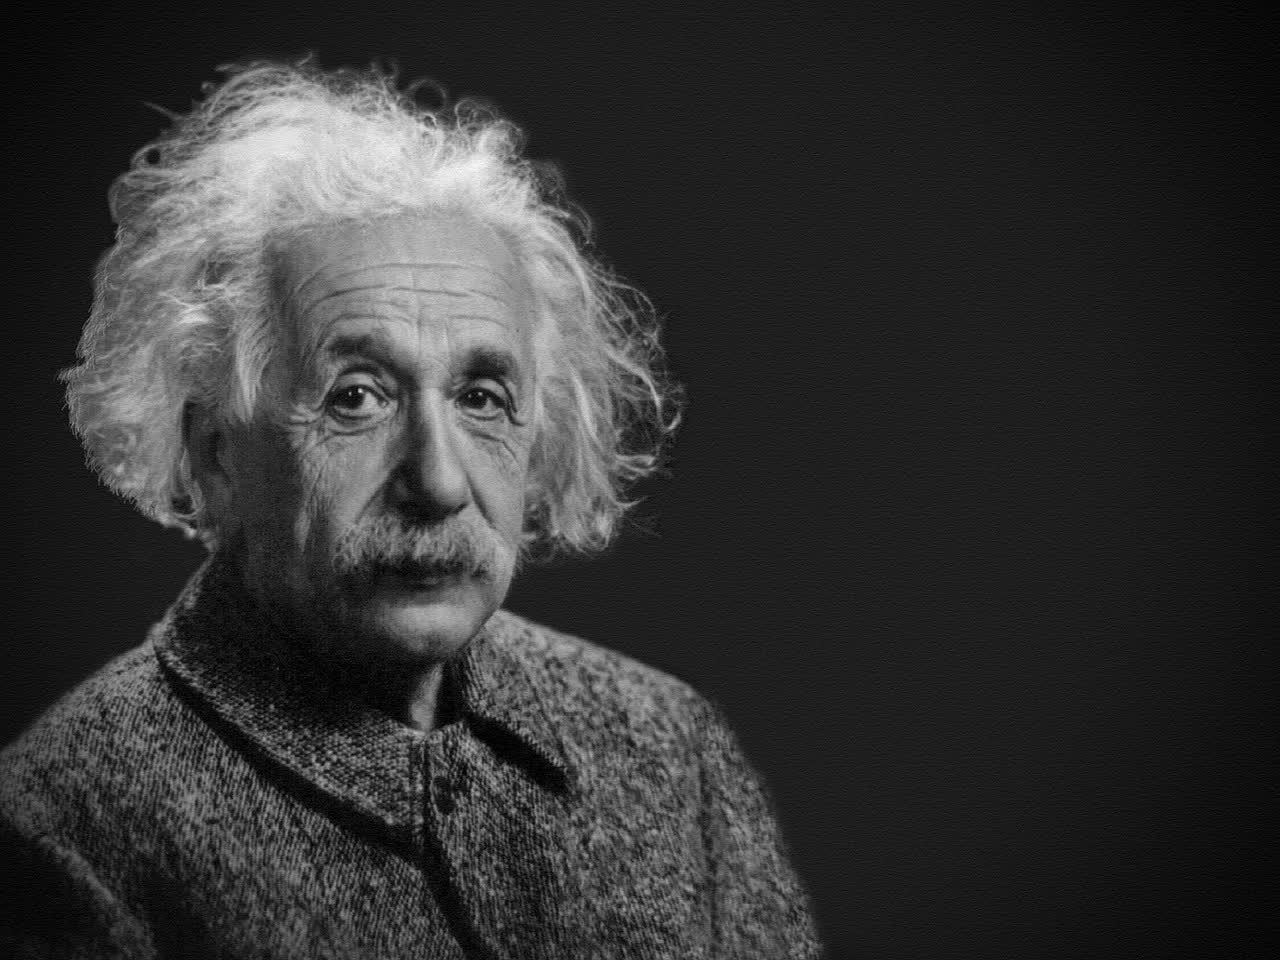 Đến Albert Einstein
cũng sai về vật lý lượng tử, một thí nghiệm vừa chứng minh
điều đó